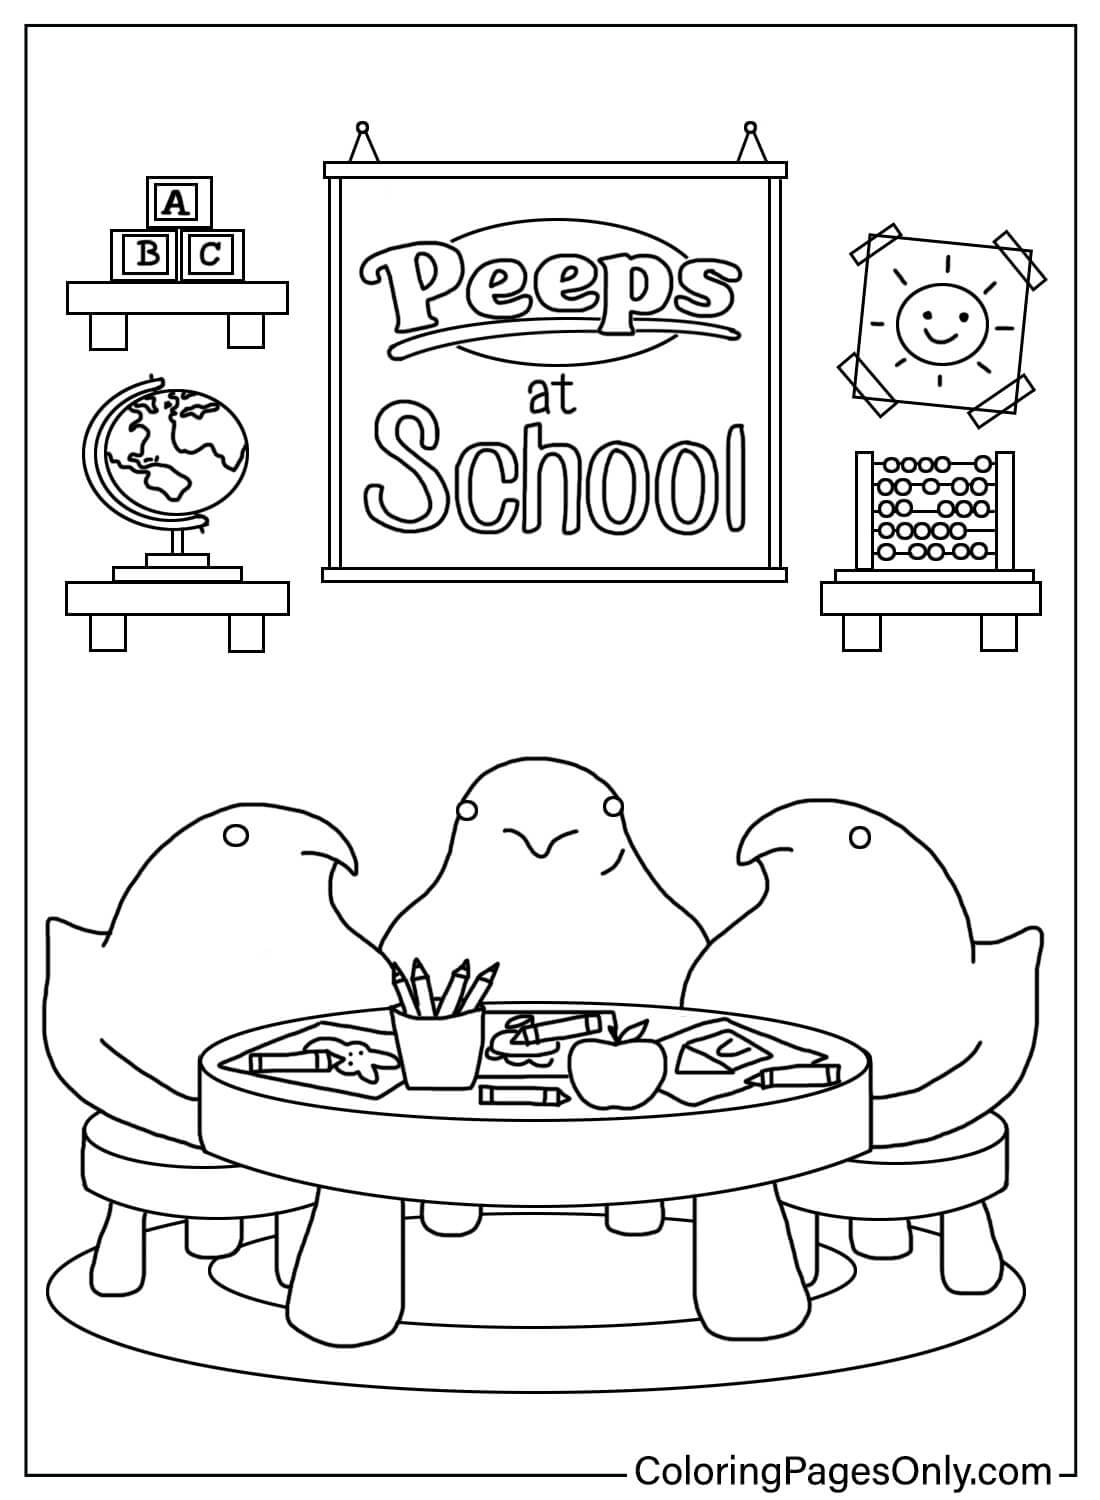 Peeps na escola from Peeps